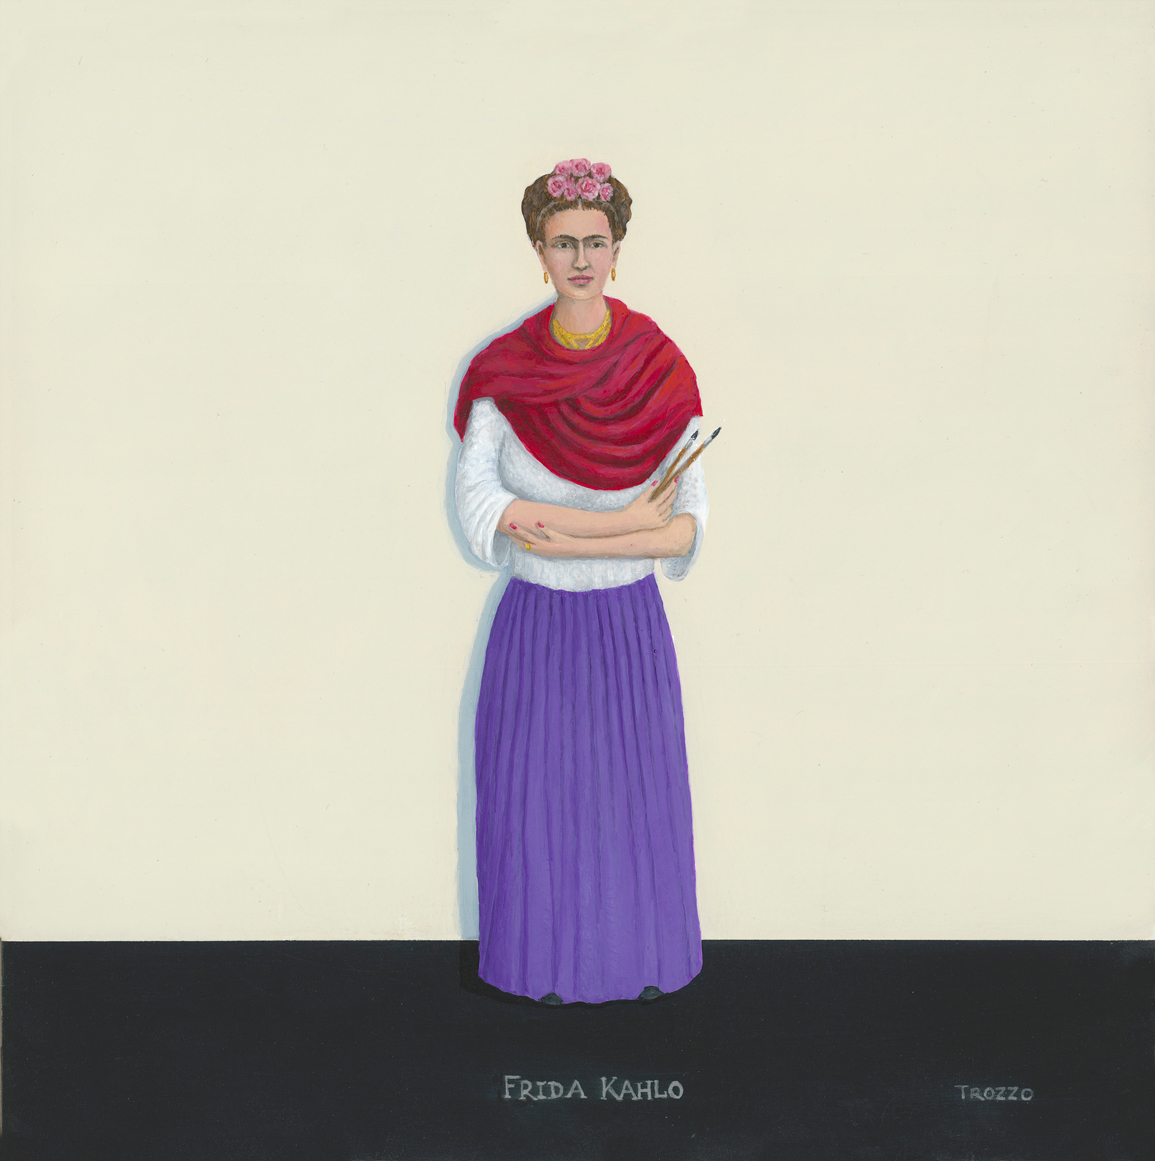 Frida kahlo 72 xmshus